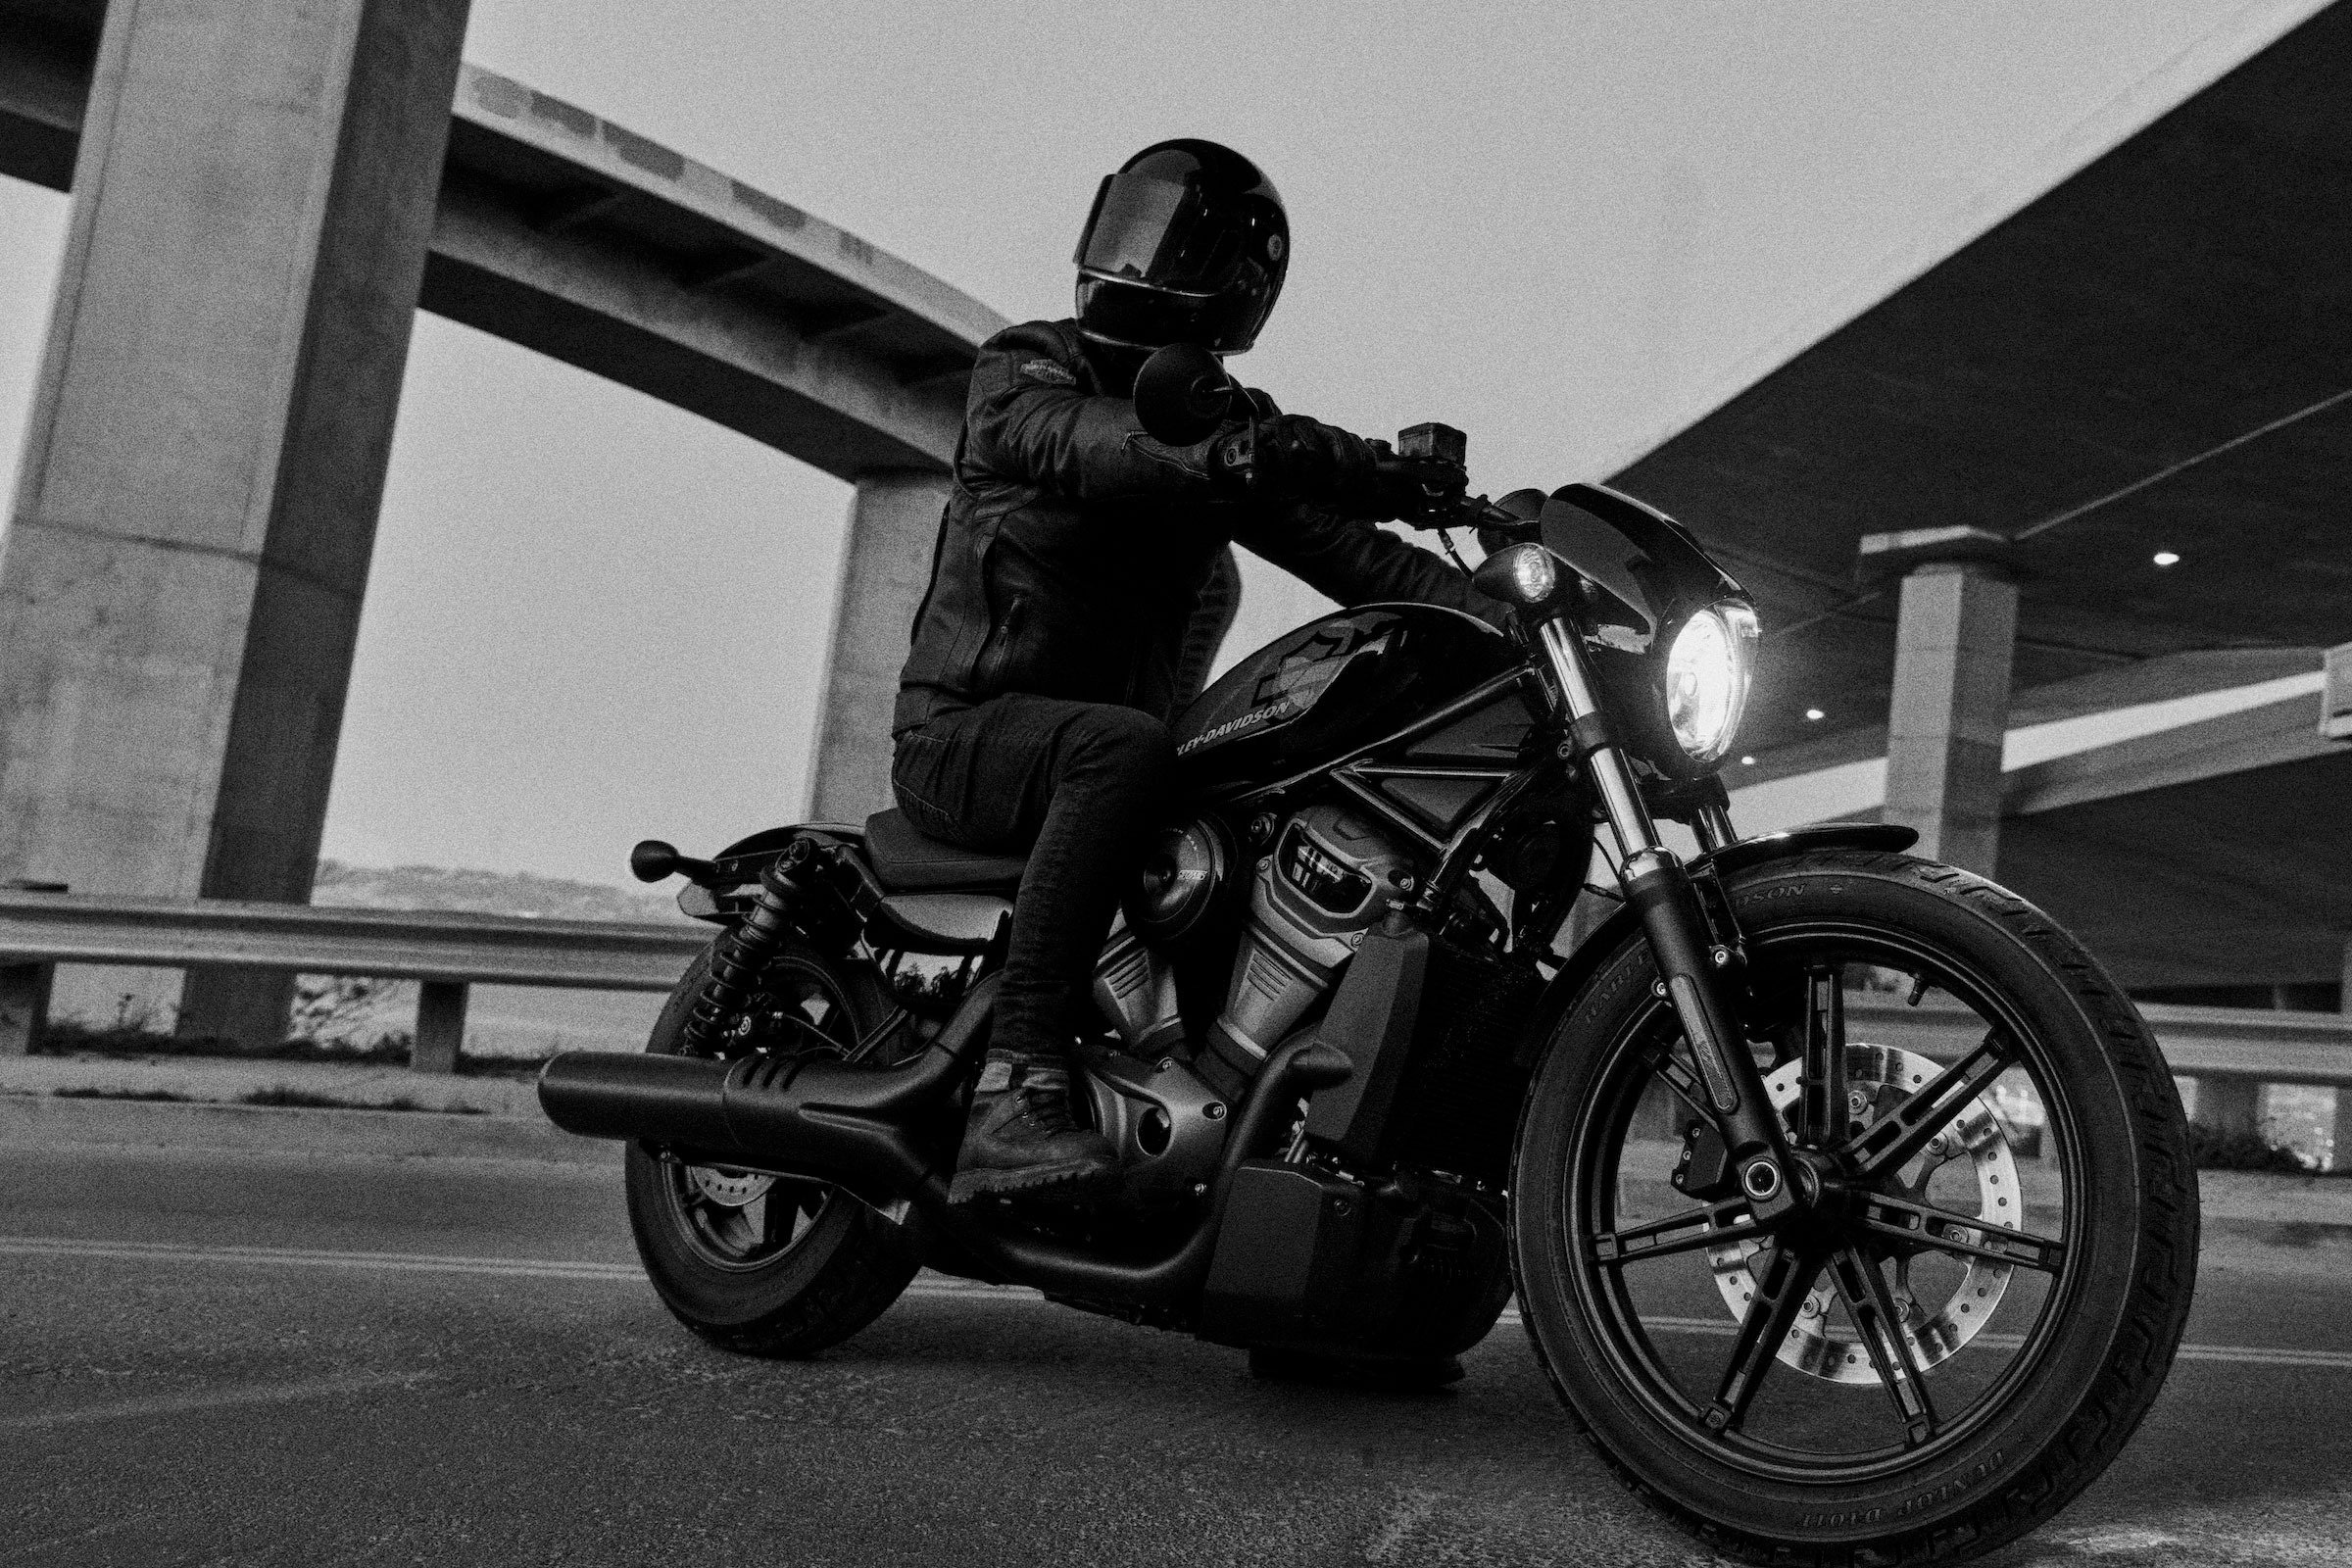 Harley-Davidson ra mắt mẫu xe Nightster mới với những cải tiến vượt trội và hấp dẫn